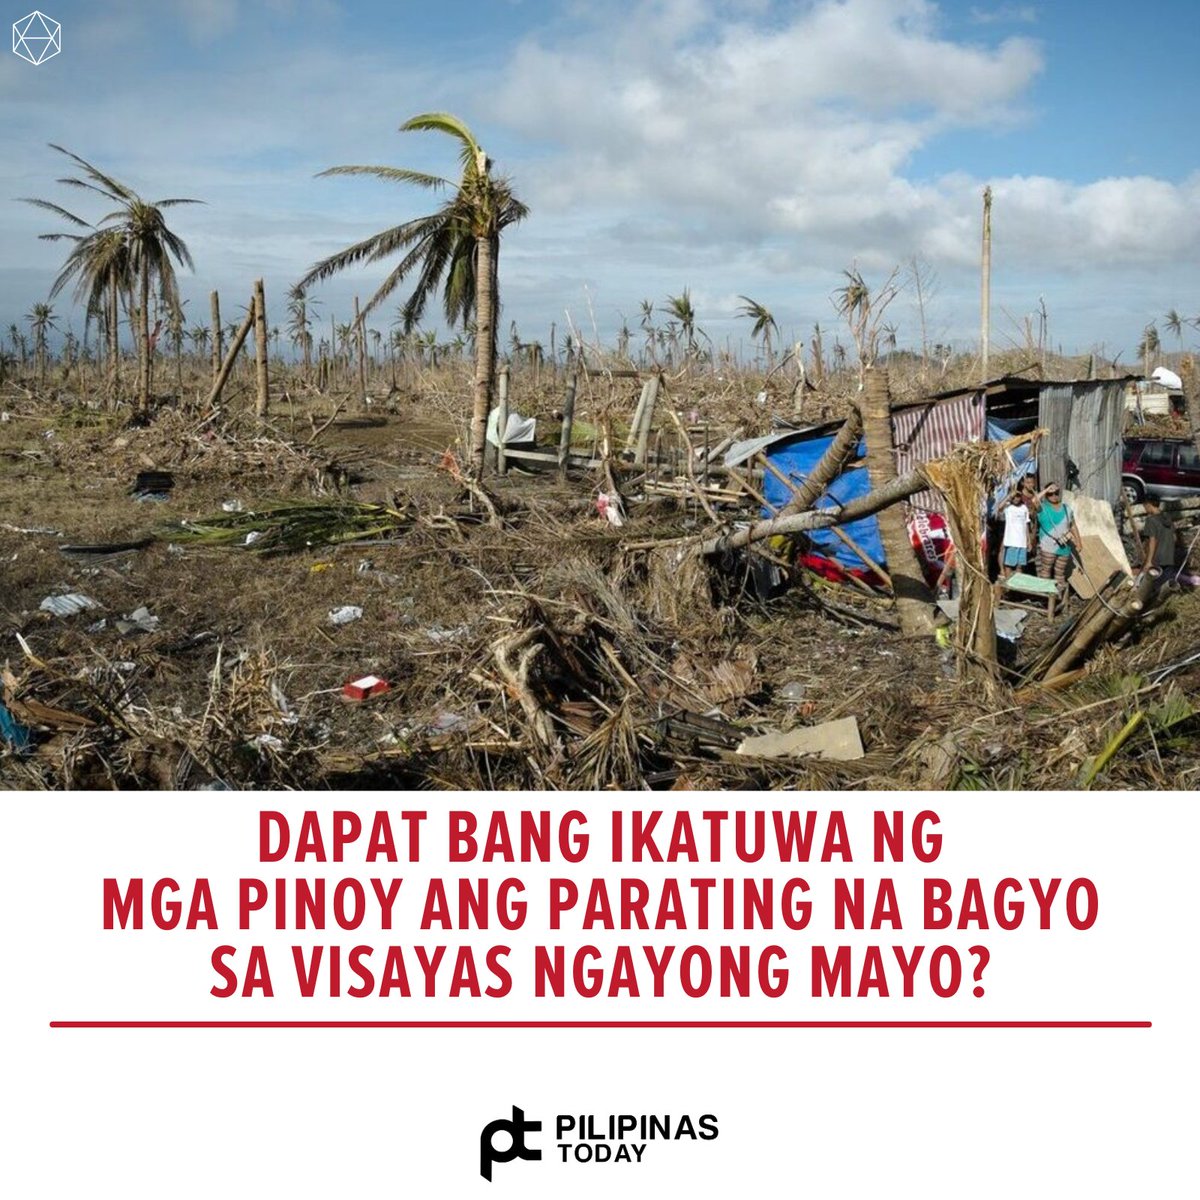 DAPAT NGA BA?

#PilipinasToday
#May
#Visayas